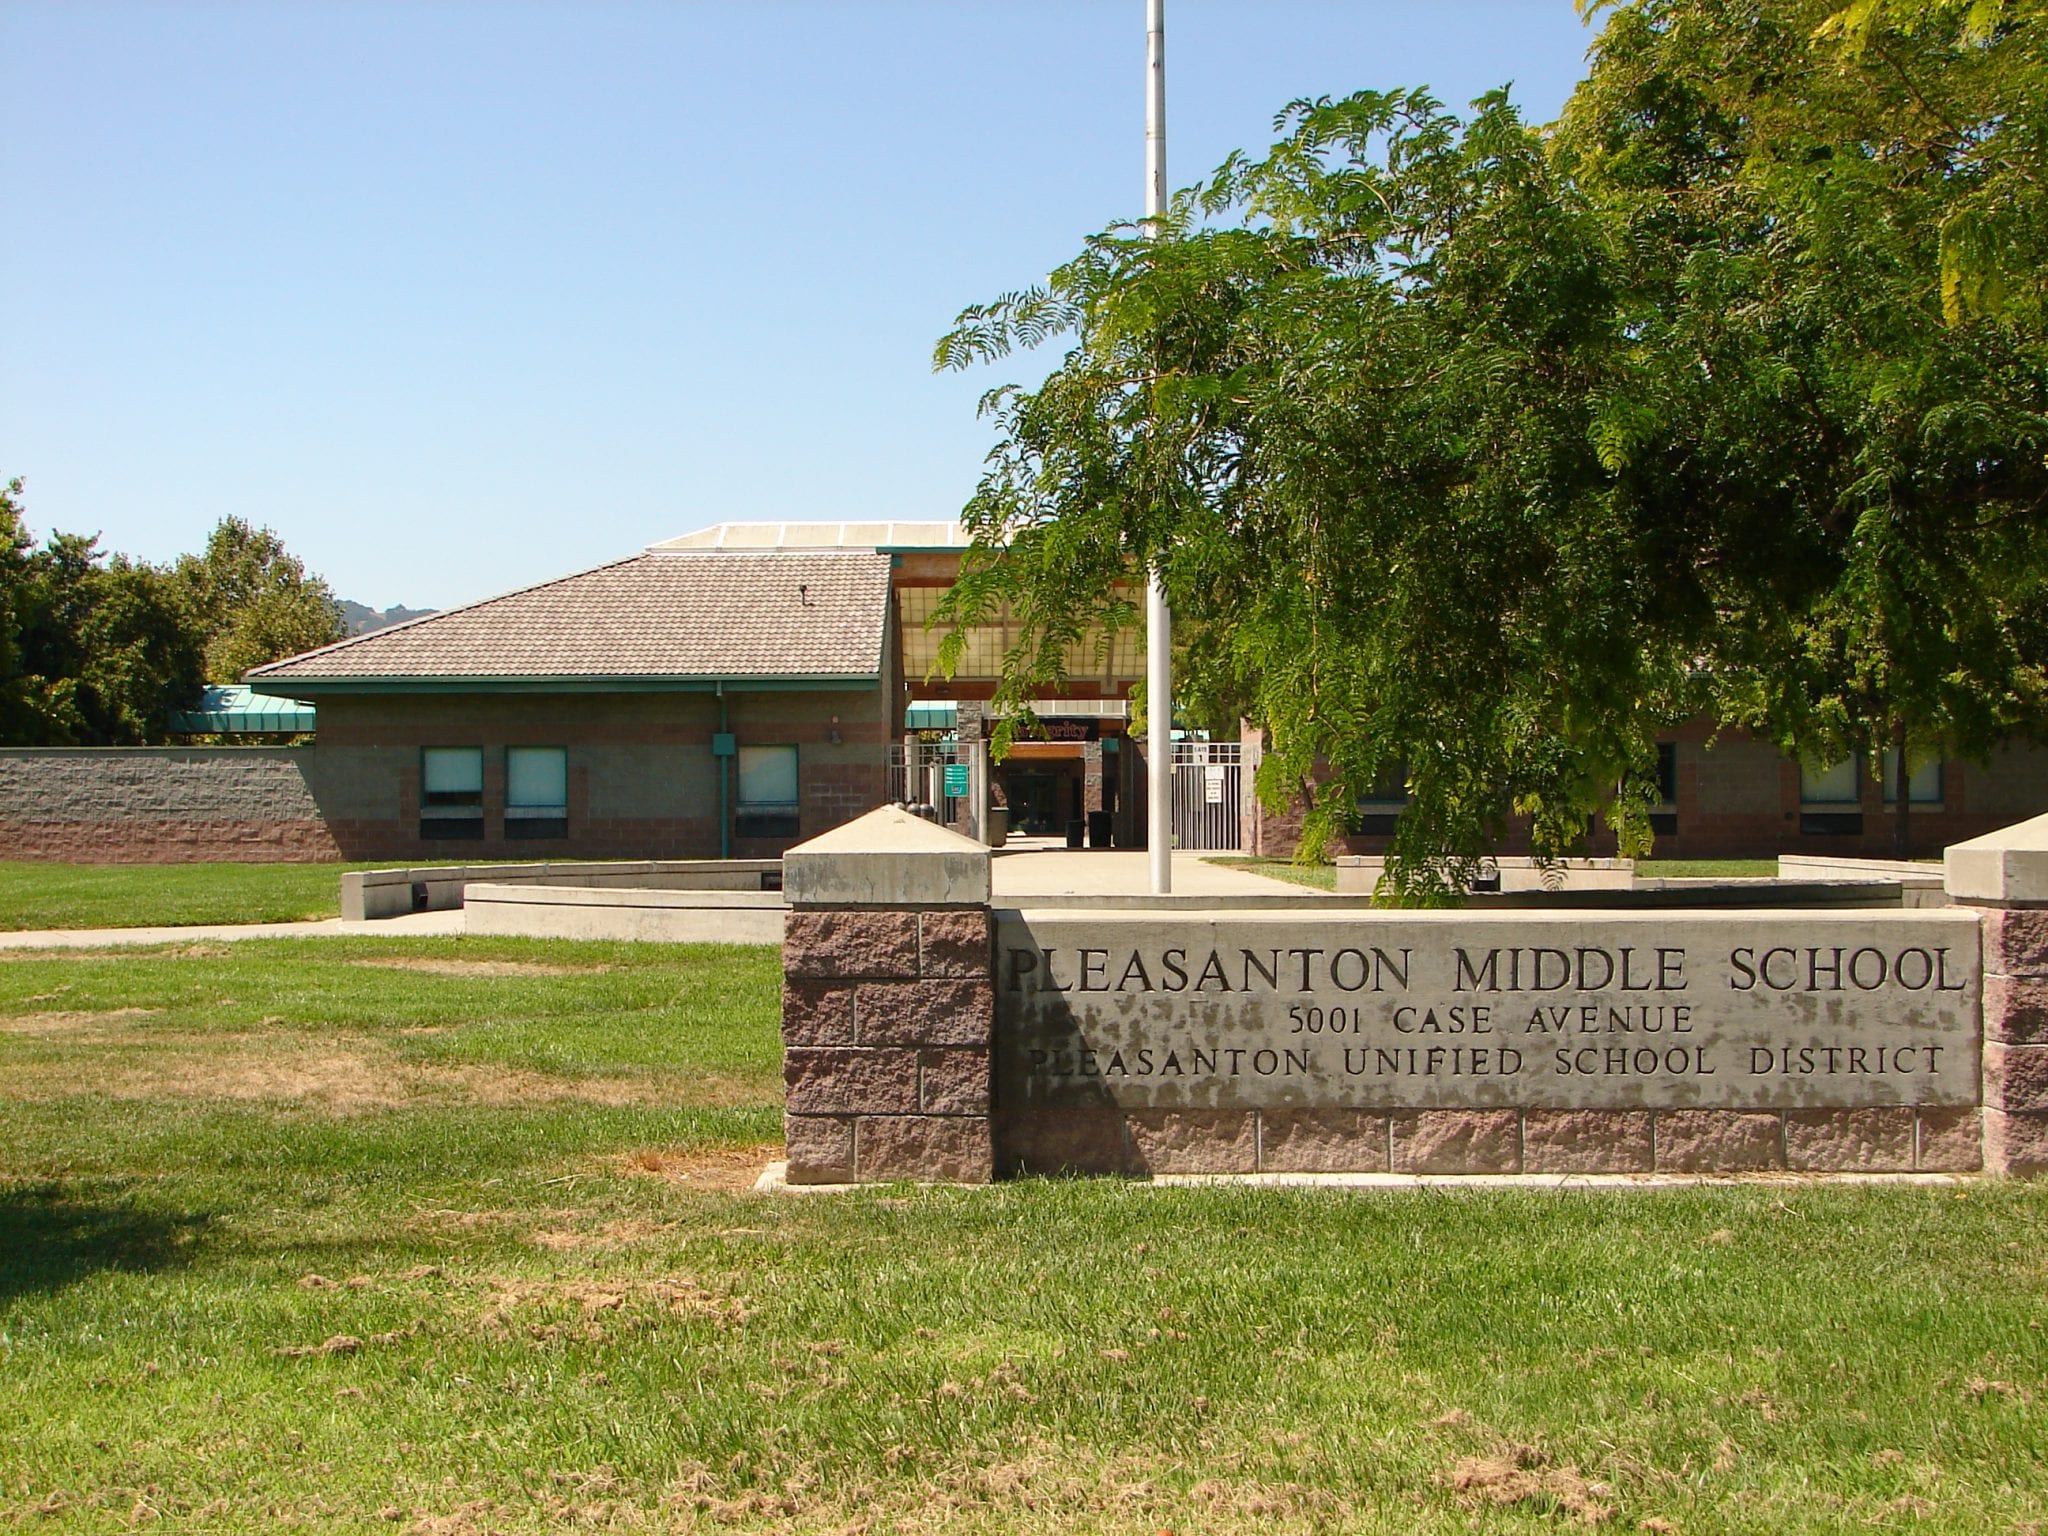 Pleasanton Middle School